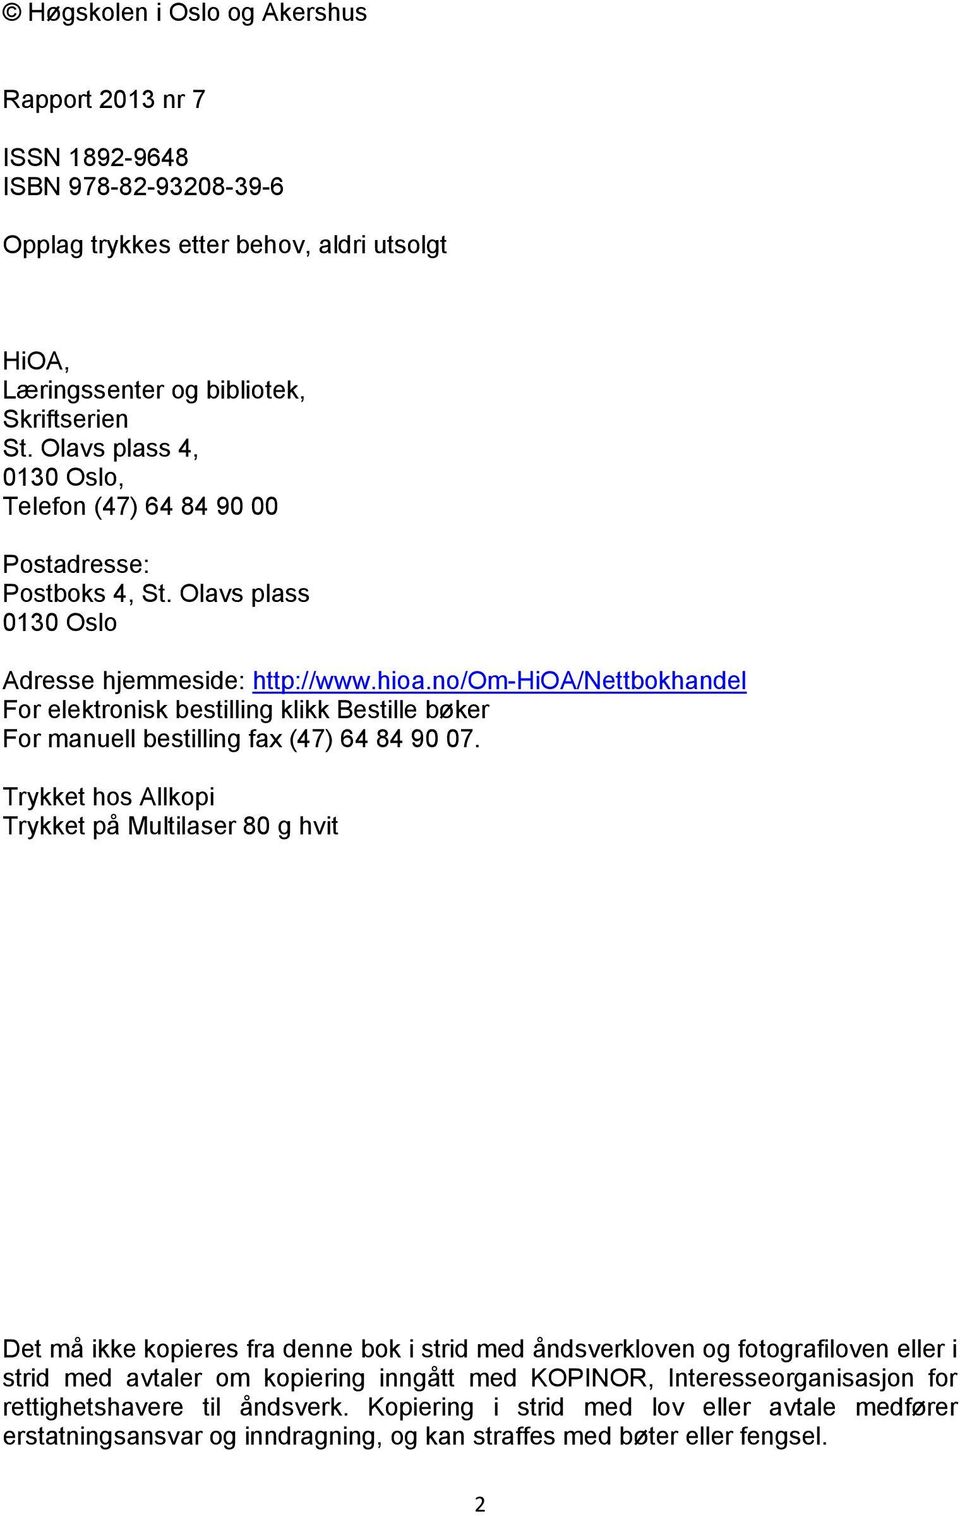 no/om-hioa/nettbokhandel For elektronisk bestilling klikk Bestille bøker For manuell bestilling fax (47) 64 84 90 07.